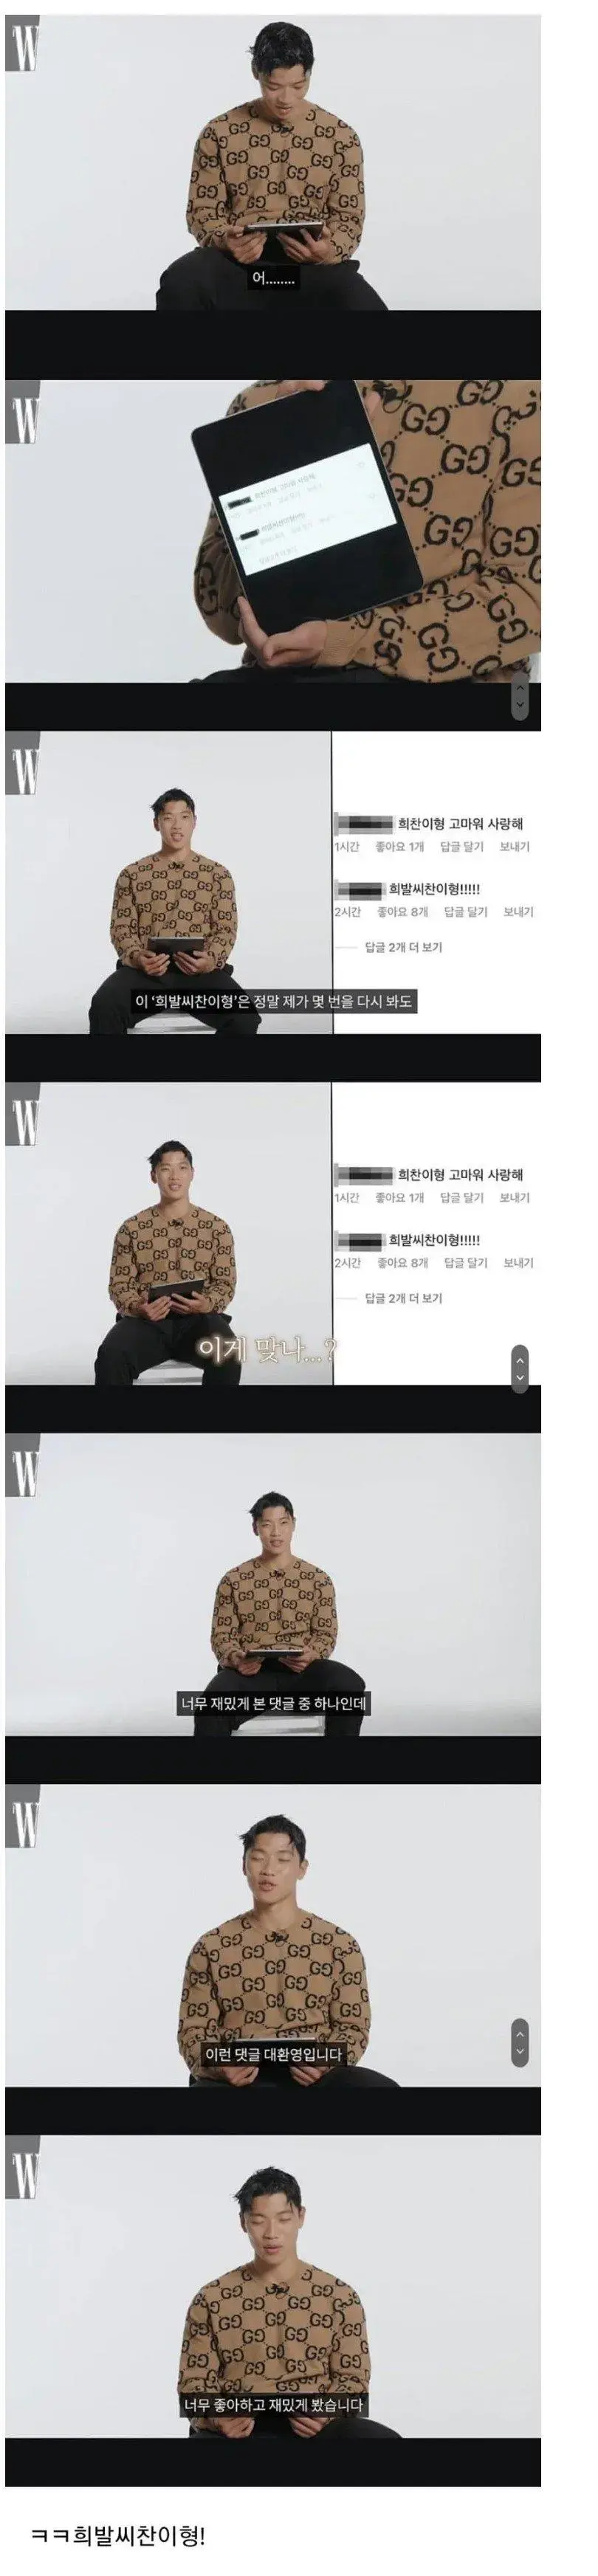 싱글벙글 씨찬이형을 싱글벙글하게 만든 댓글.jpg | mbong.kr 엠봉